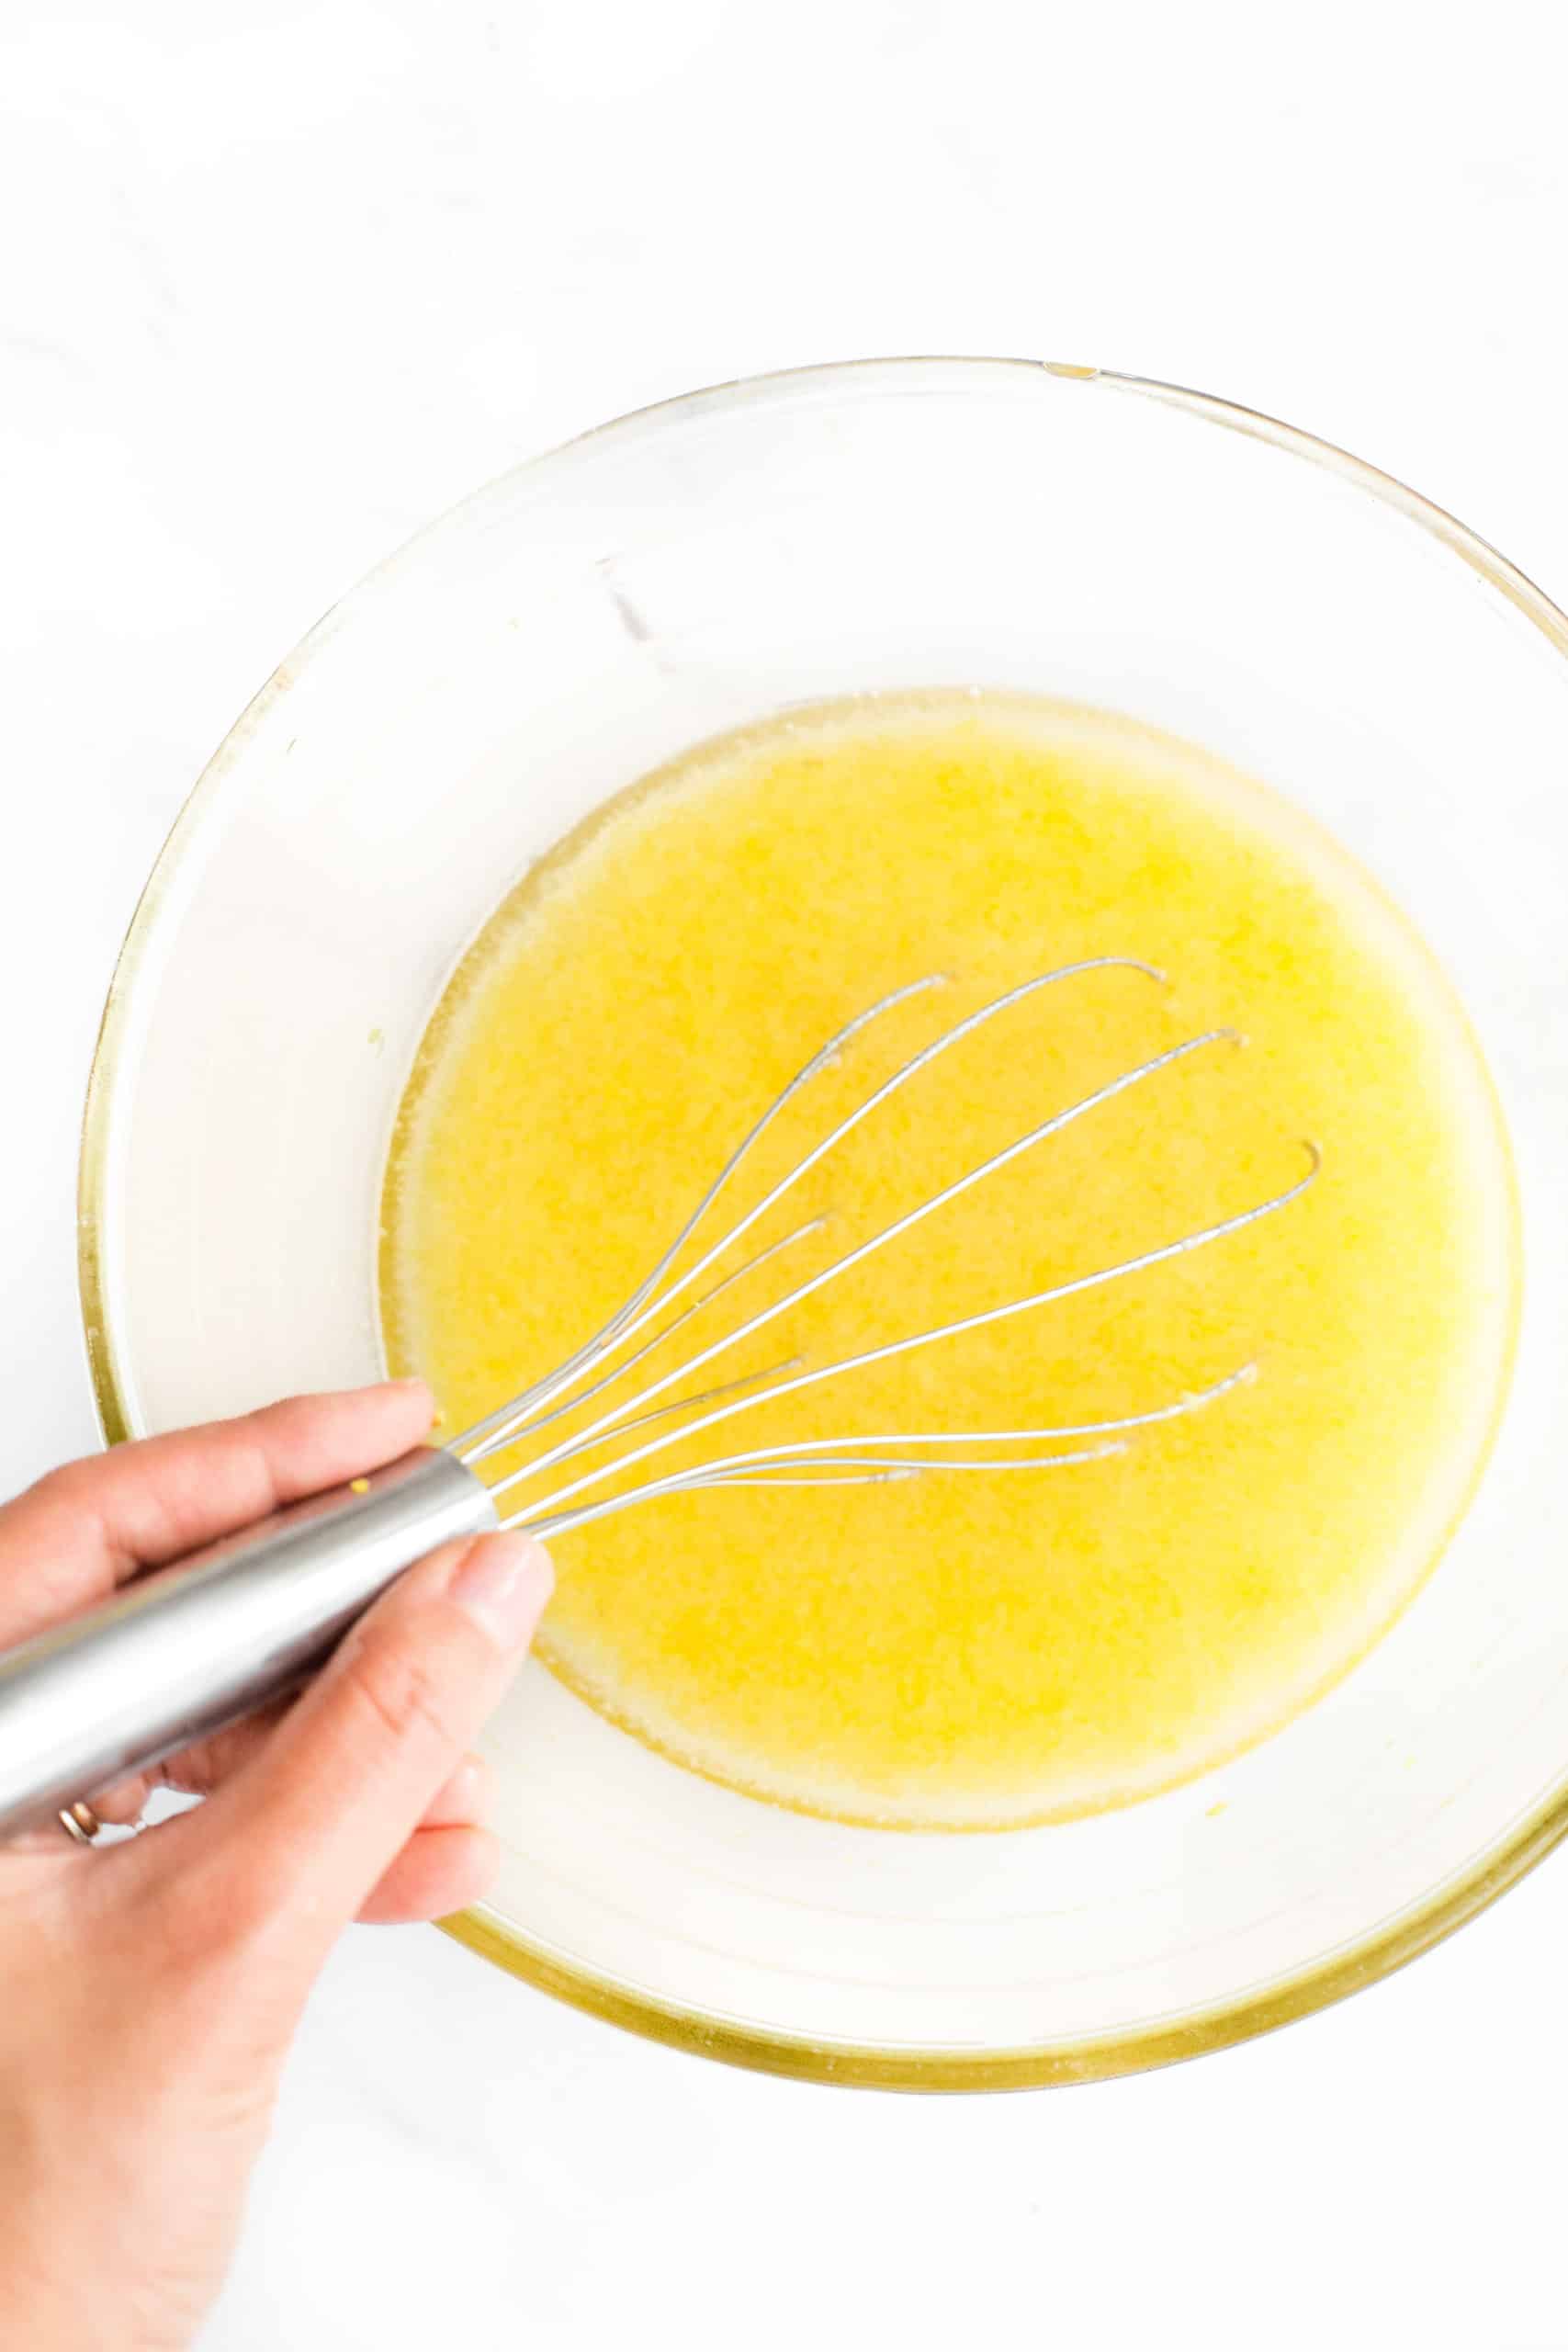 Bateți manual ingredientele pentru lemon curd într-un bol mare de sticlă.